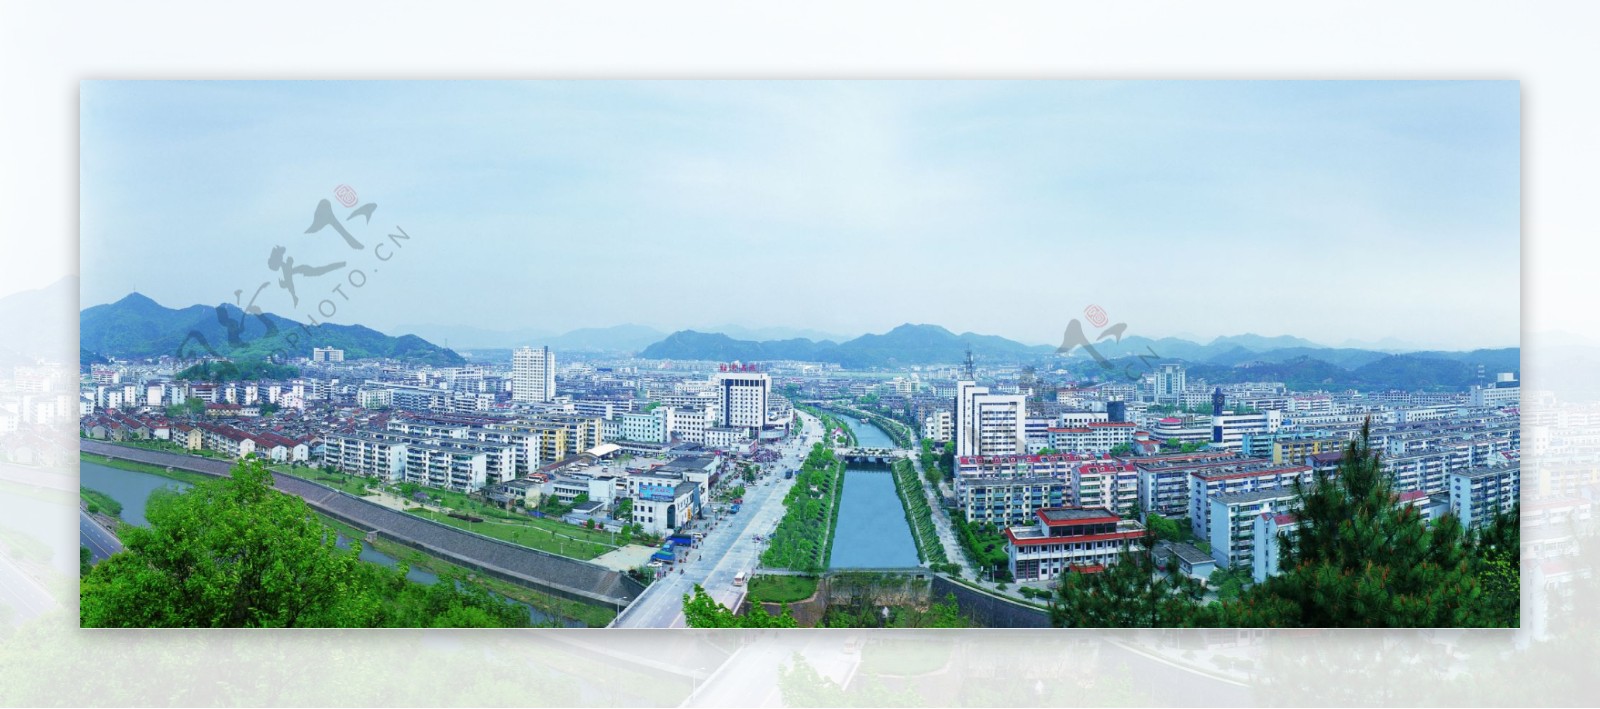 常山县城全景图图片